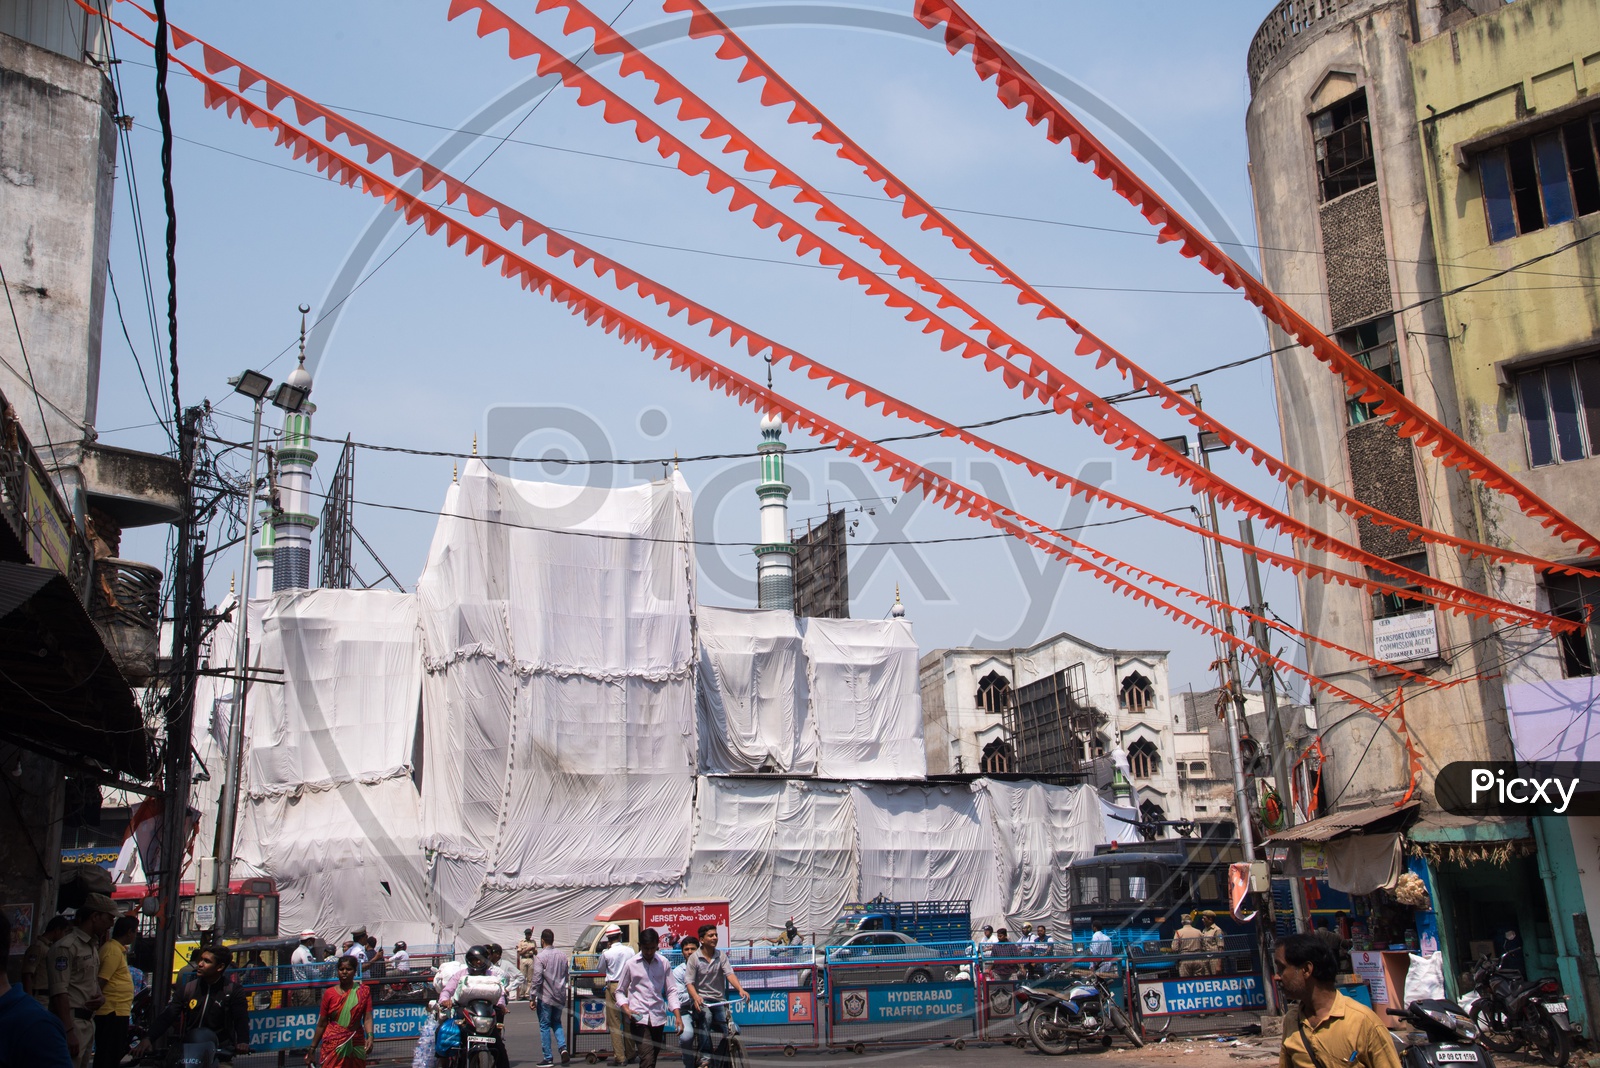 Jama Masid at Siddamber Bazaar in Hyderabad